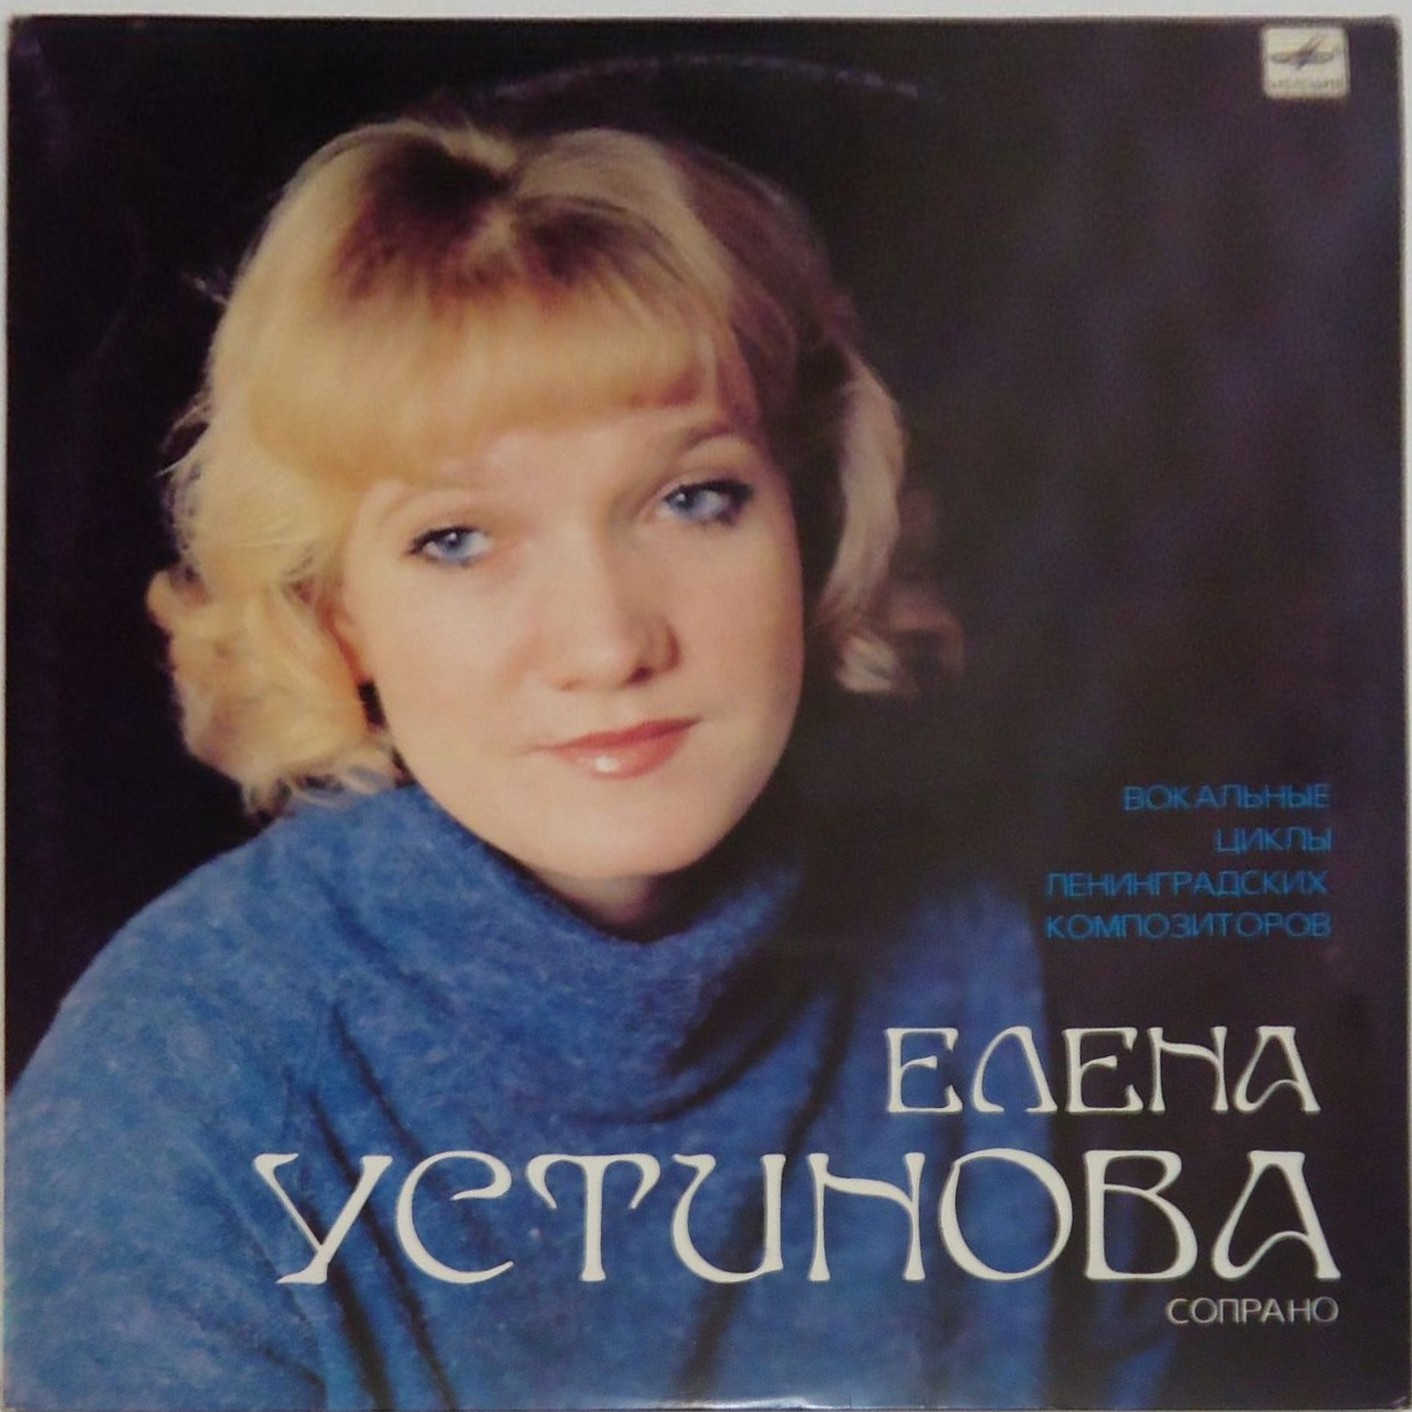 Елена УСТИНОВА (сопрано). Вокальные циклы ленинградских композиторов